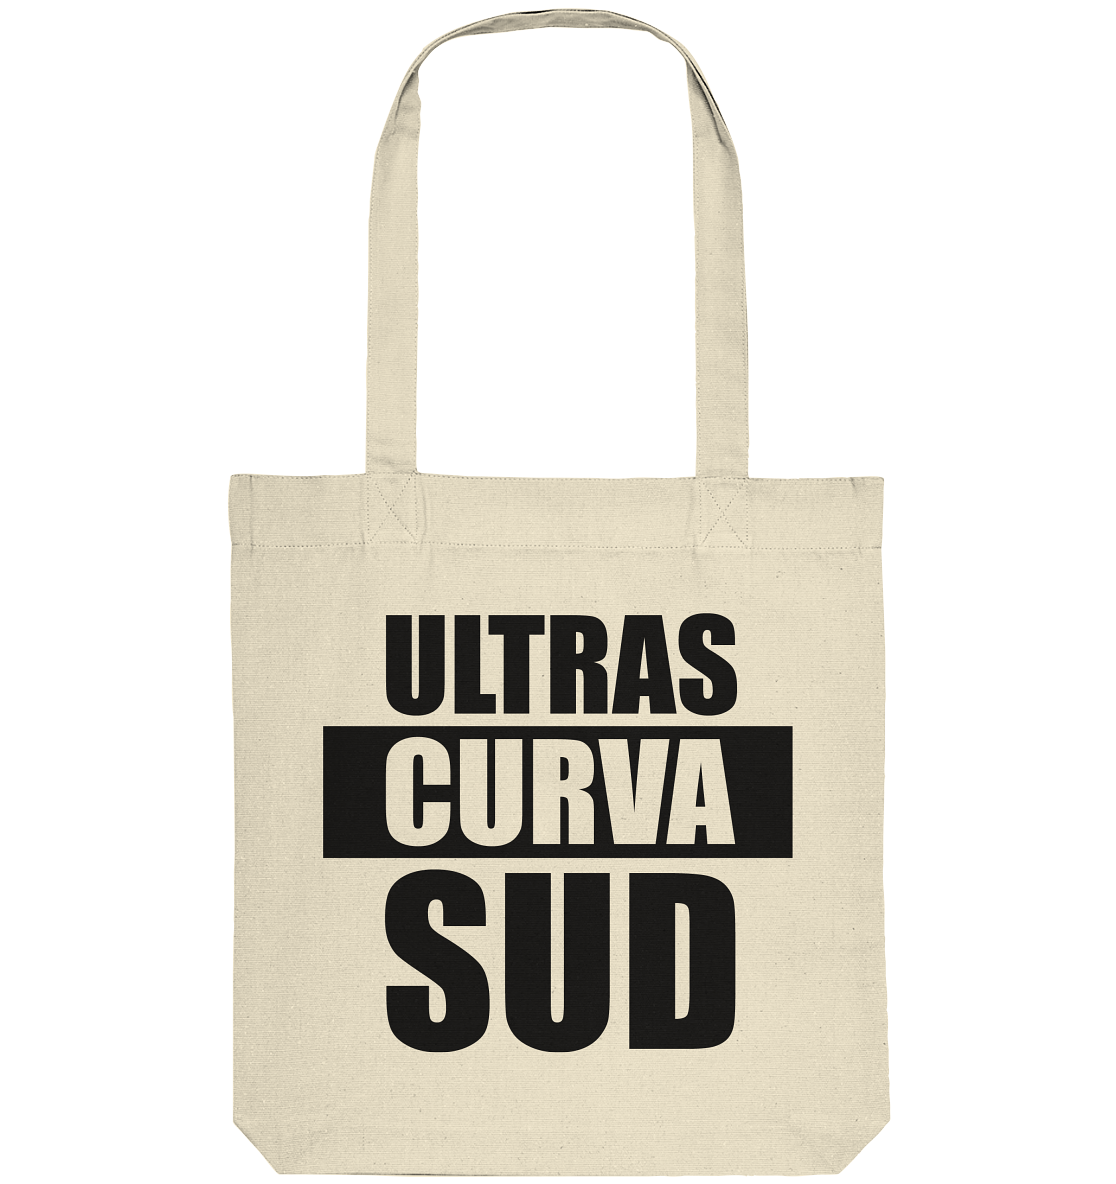 Ultras Tote-Bag "ULTRAS CURVA SUD" Organic Baumwolltasche natural